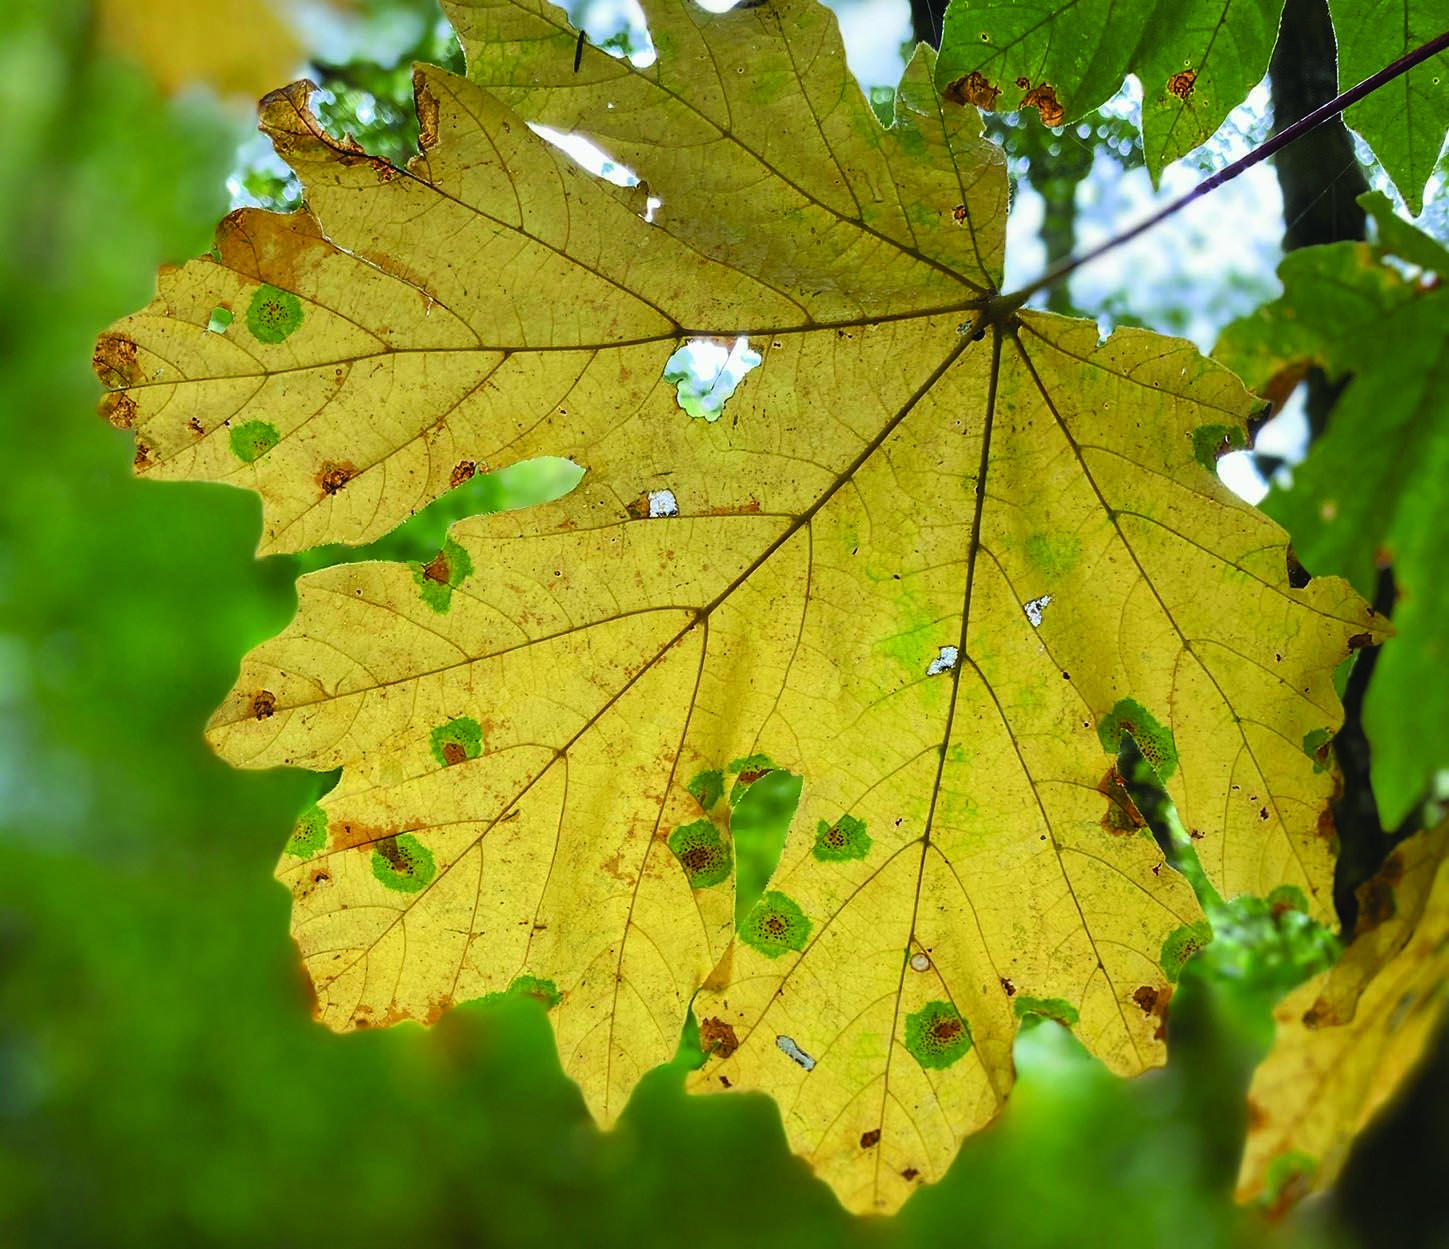 bigleaf maple leaf, yellow, with holes